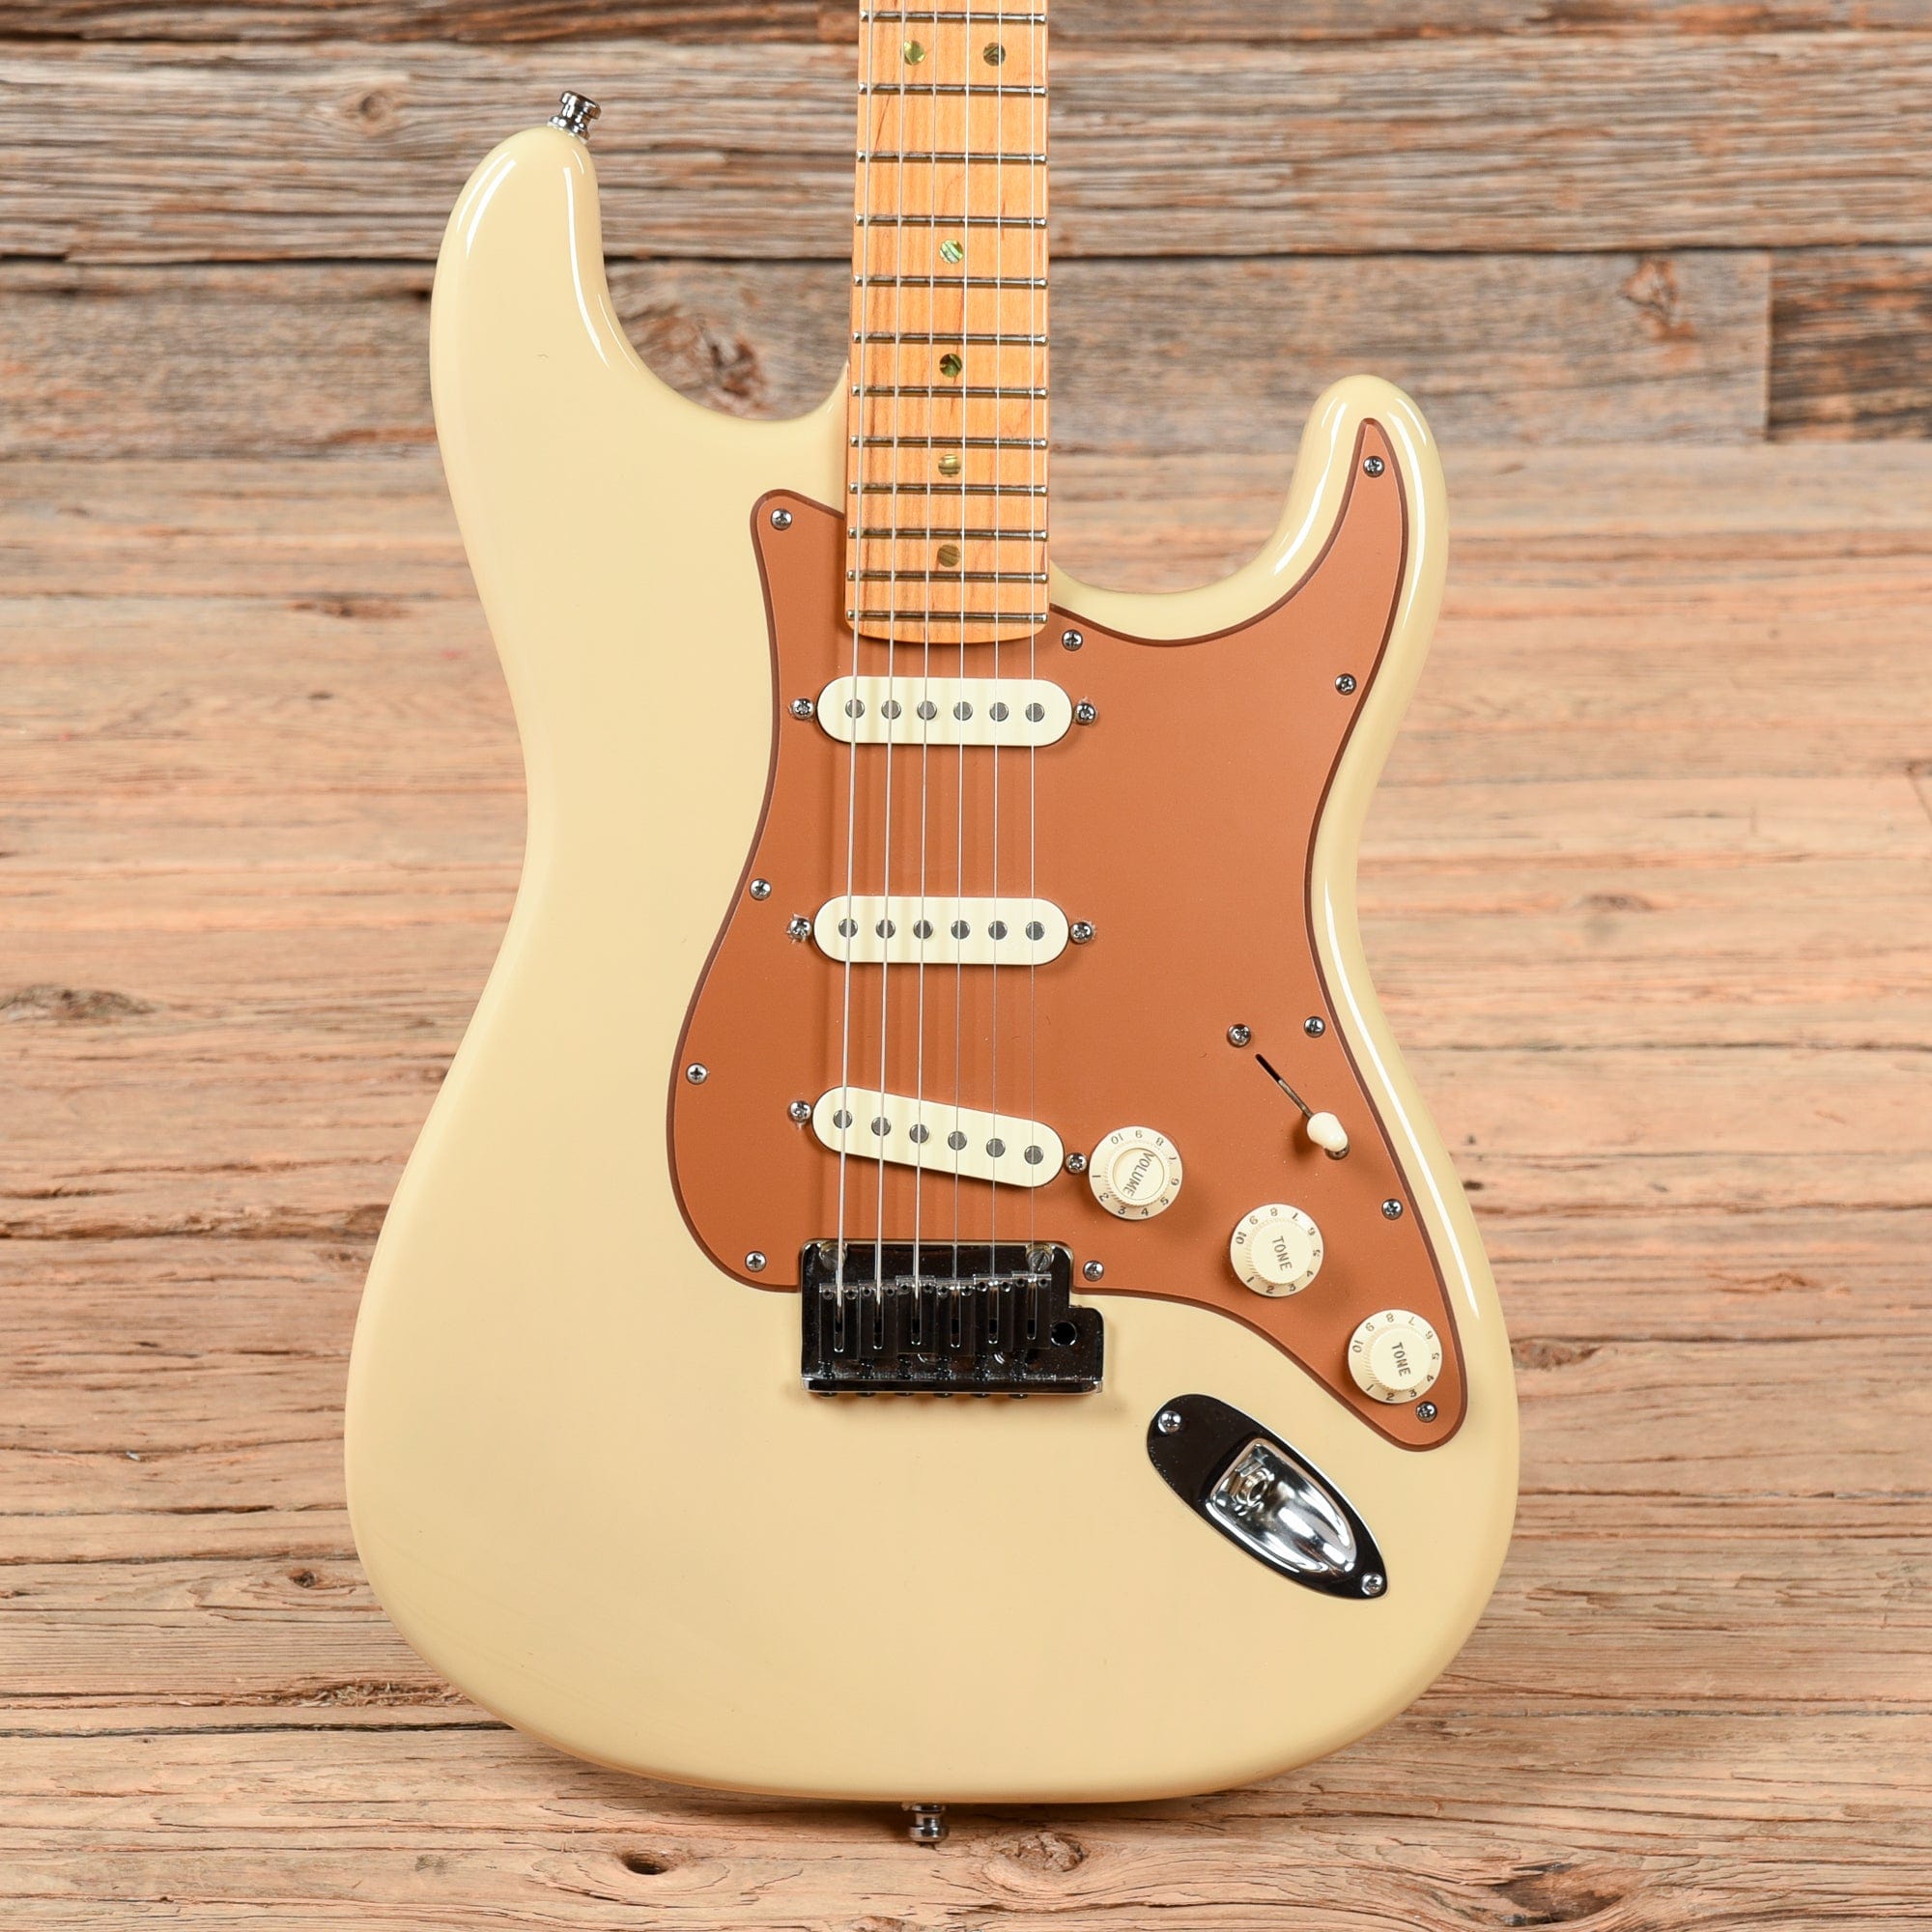 Fender American Deluxe Stratocaster V Neck Honey Blonde 2006